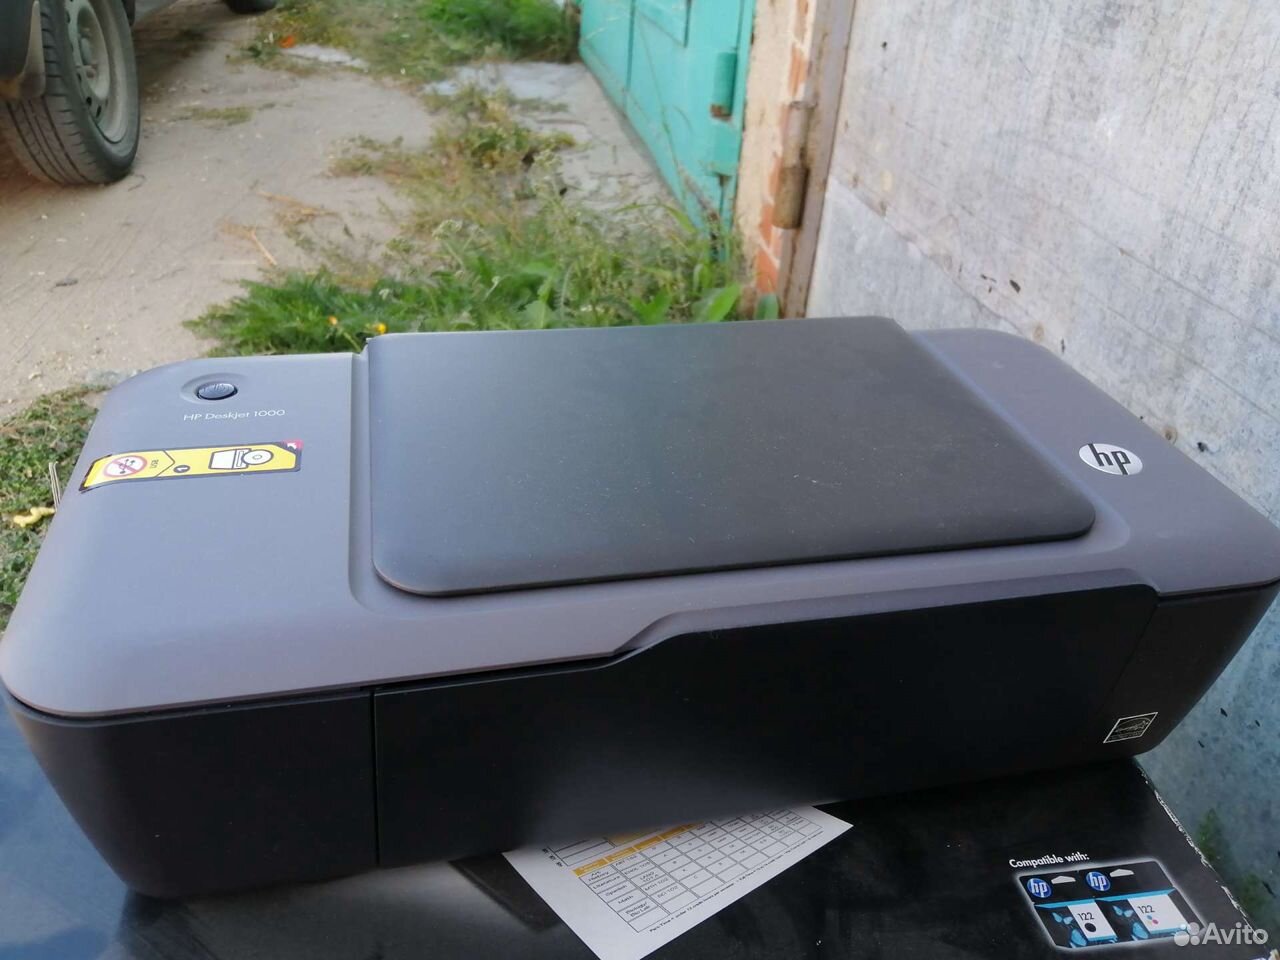 Принтер deskjet 1000 89000925520 купить 3